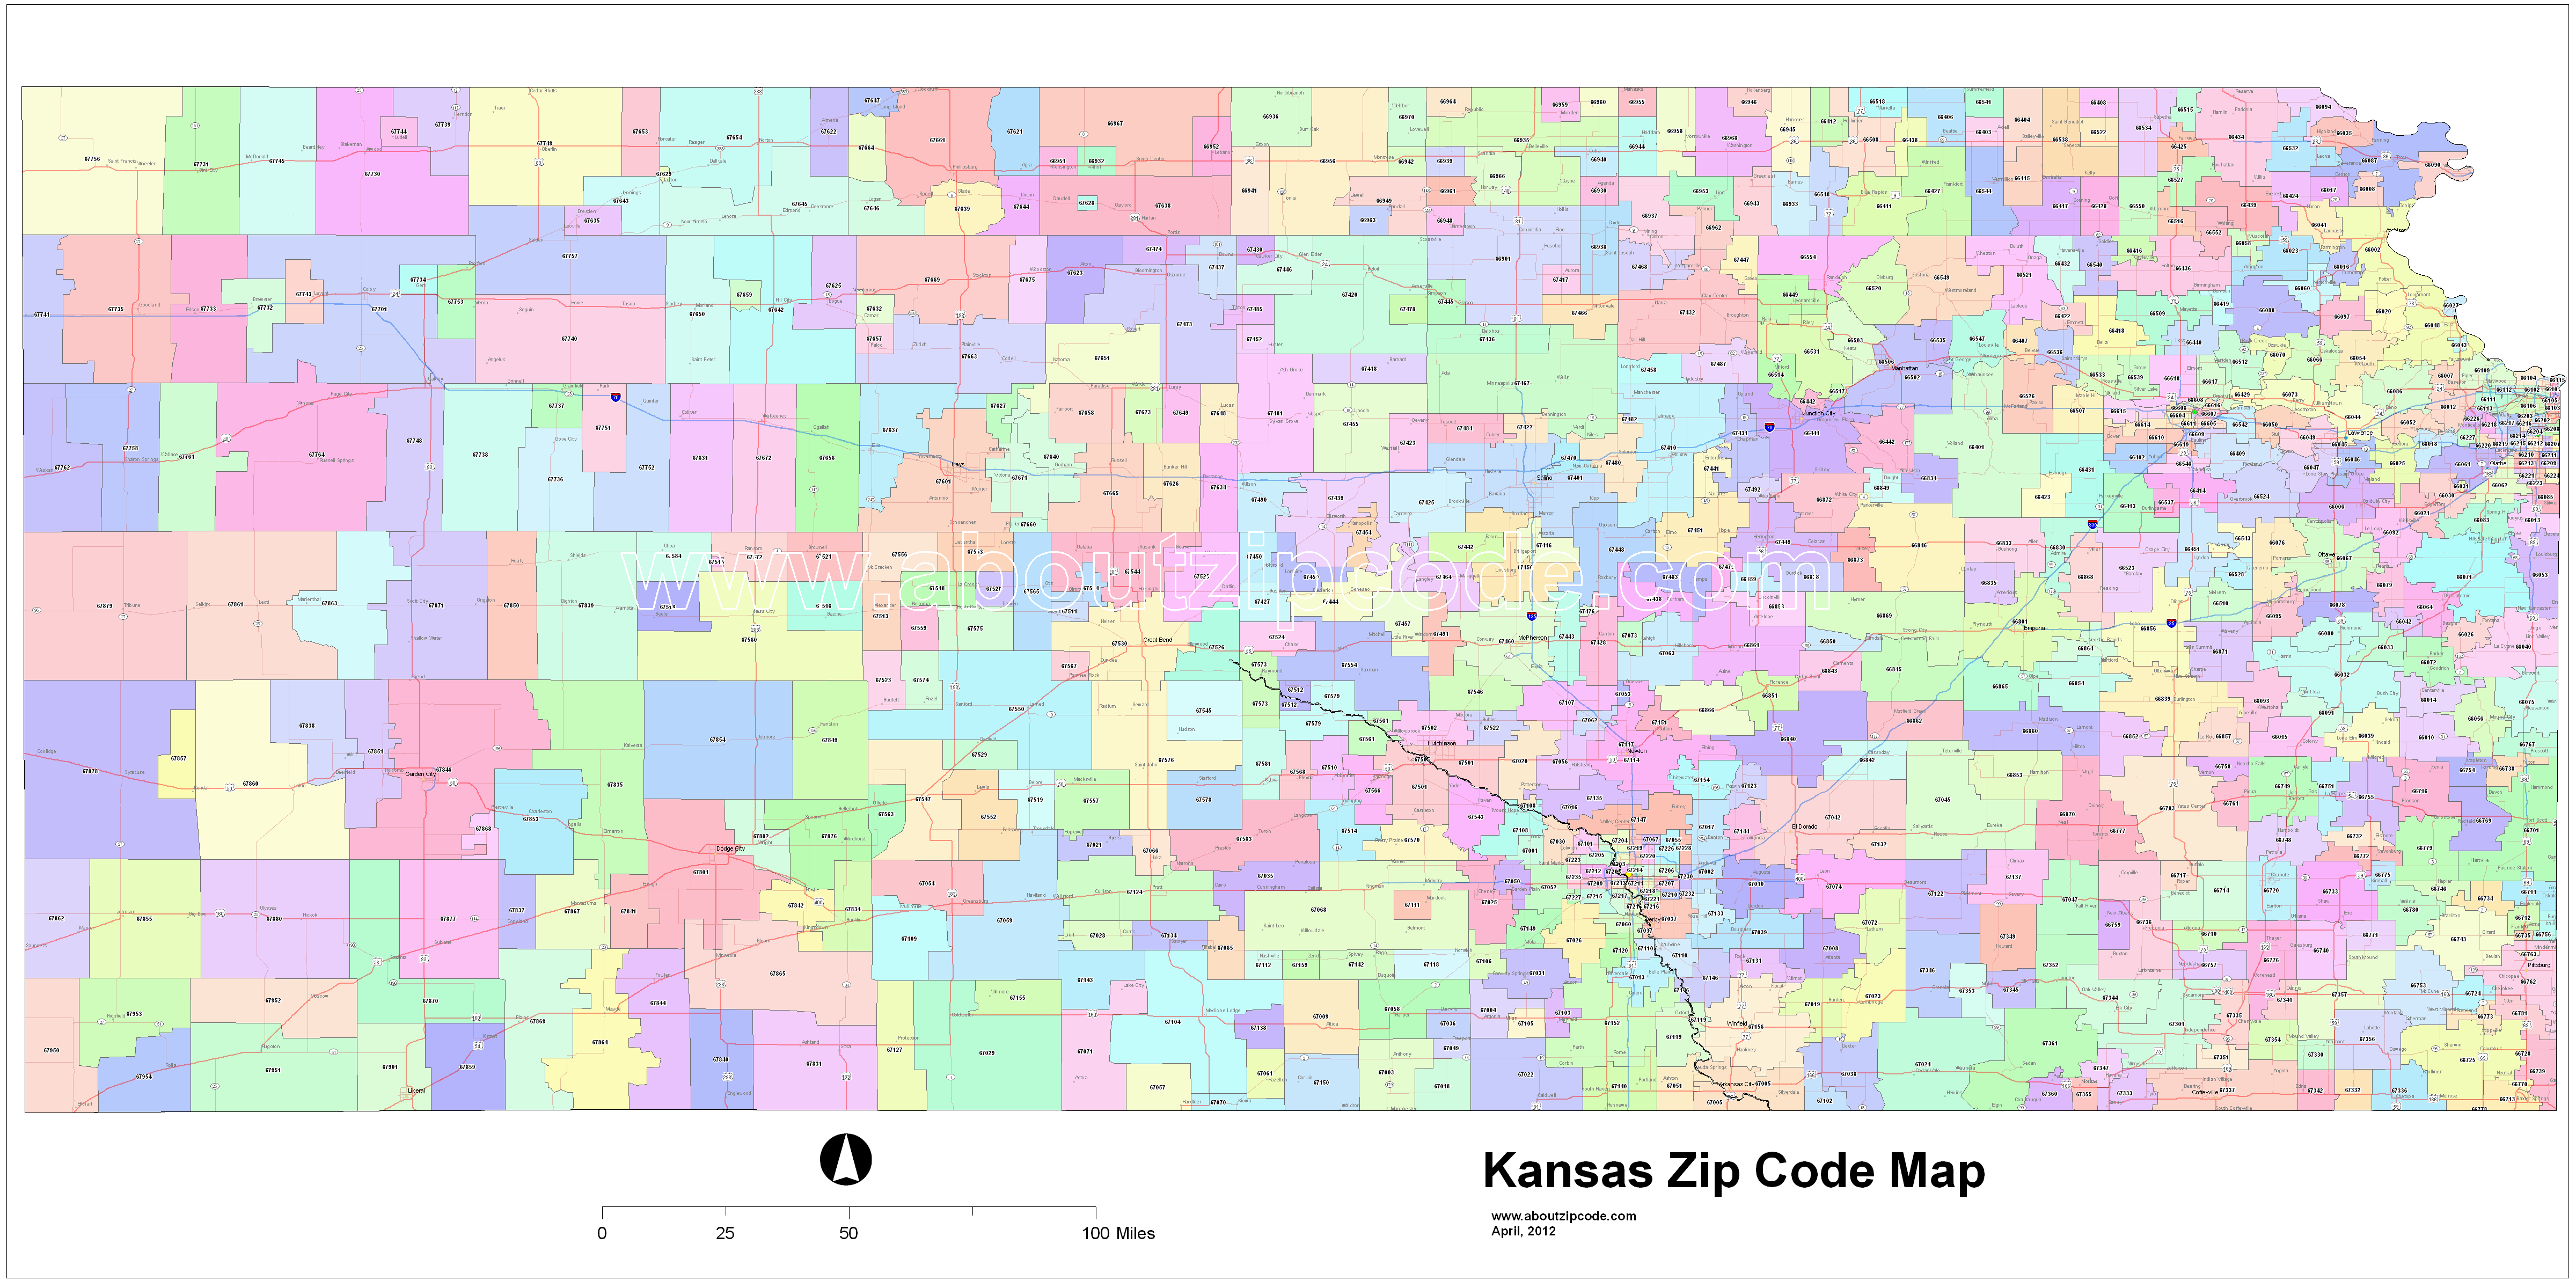 Kansas Zip Code Maps - Free Kansas Zip Code Maps